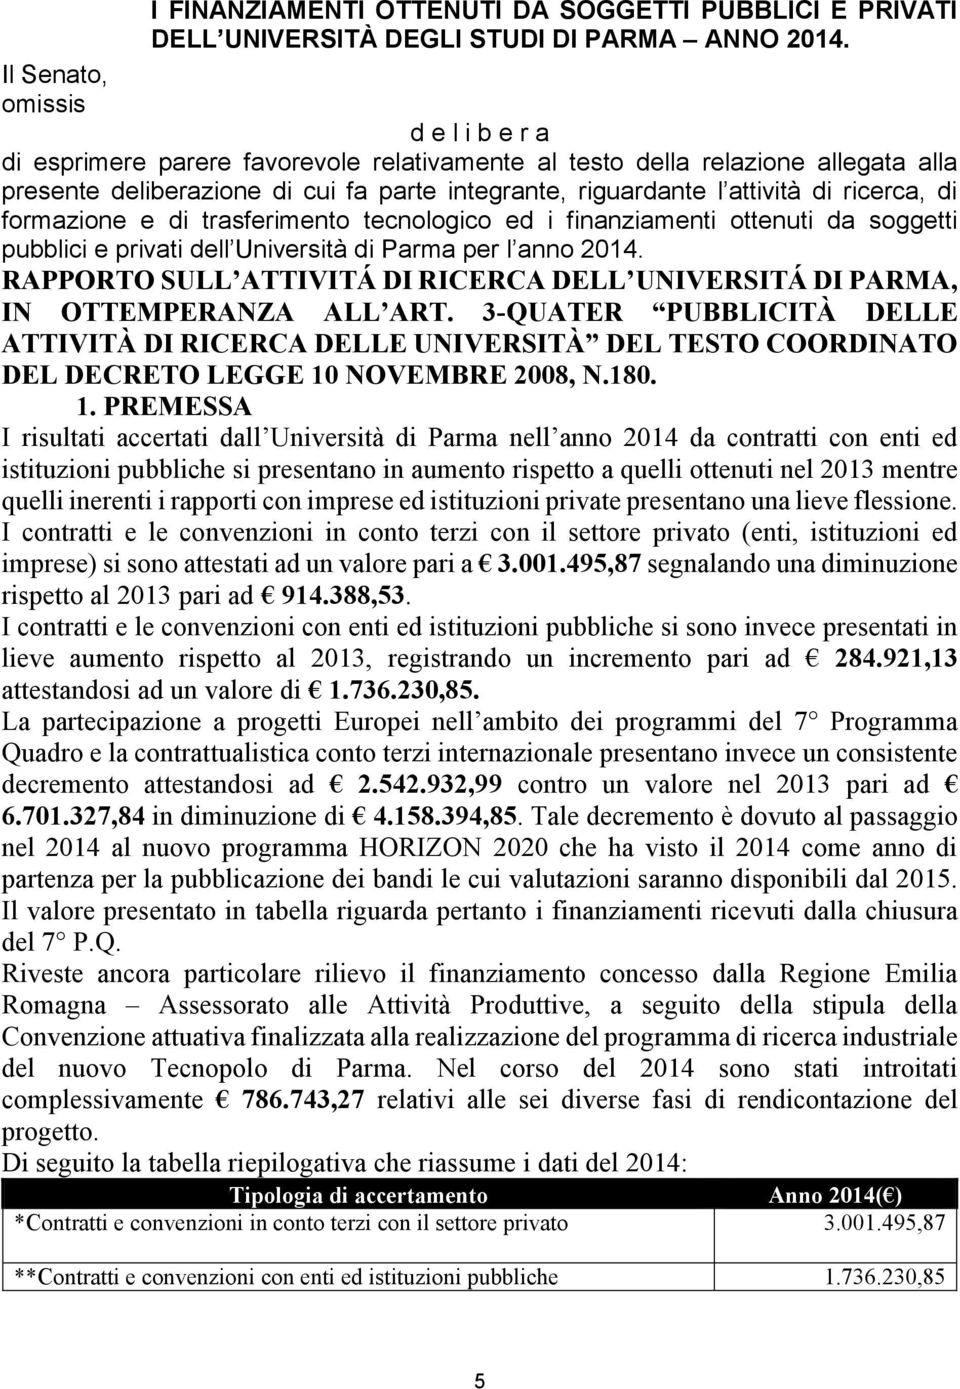 ricerca, di formazione e di trasferimento tecnologico ed i finanziamenti ottenuti da soggetti pubblici e privati dell Università di Parma per l anno 2014.